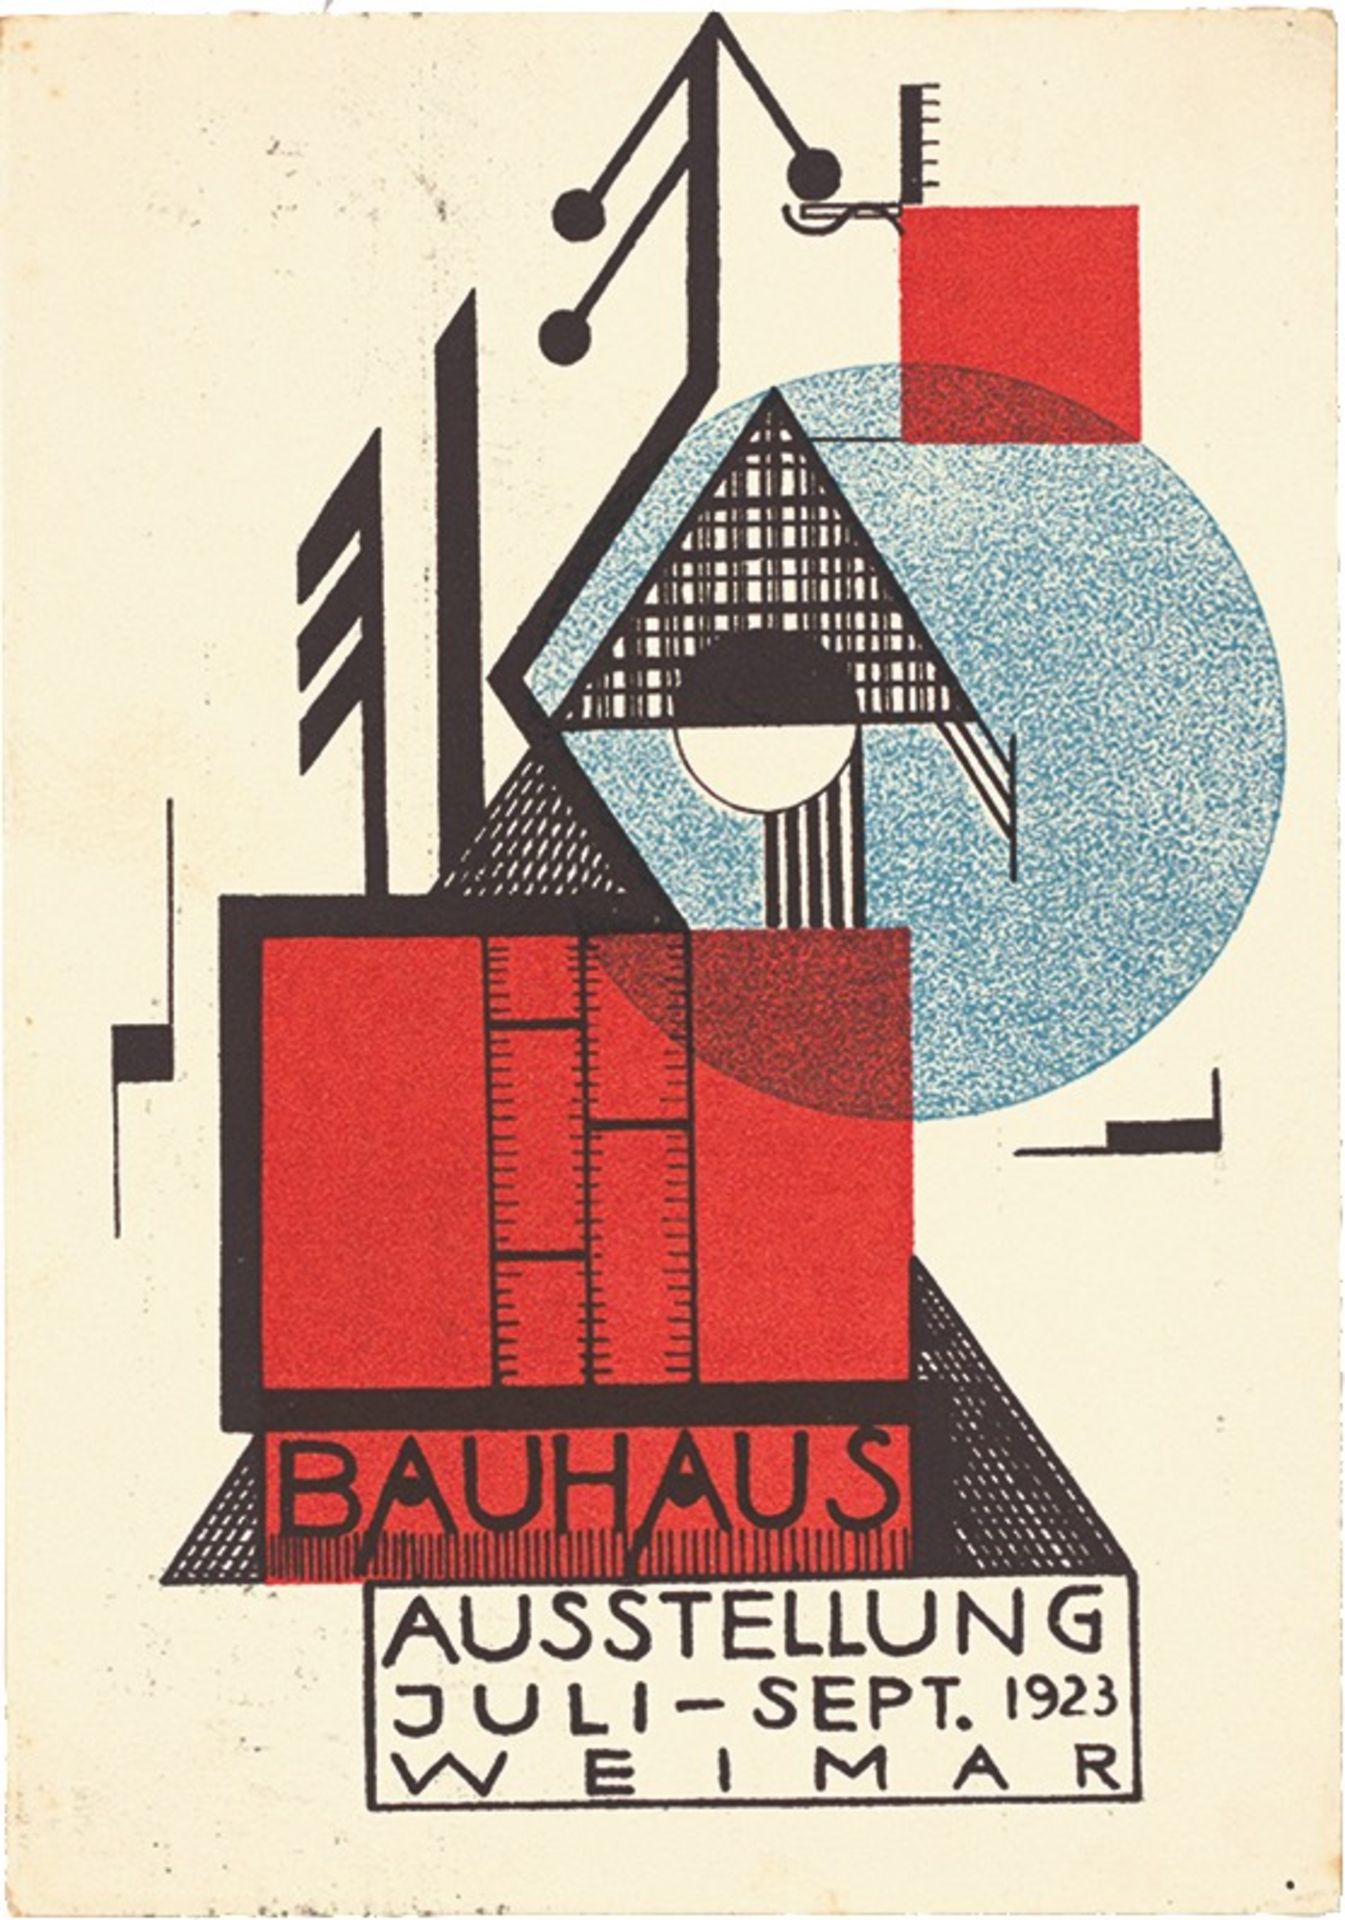 Bauhaus. ”Ausstellung Weimar 1923” – 20 postcards by various Bauhaus artists. 1923 - Image 9 of 20